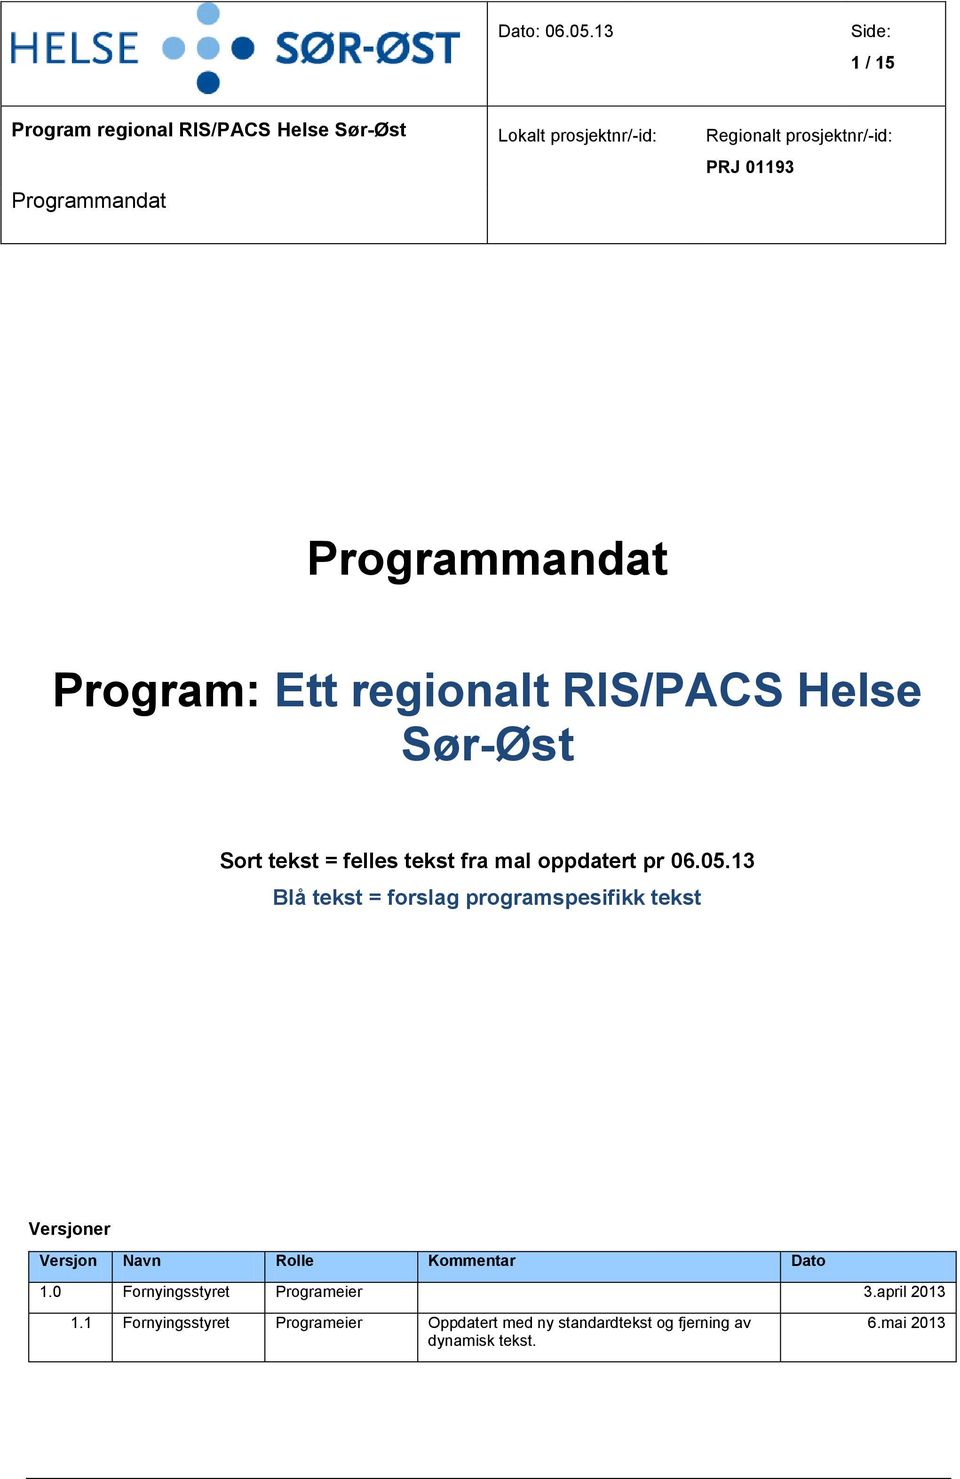 Prgrammandat Prgram: Ett reginalt RIS/PACS Helse Sør-Øst Srt tekst = felles tekst fra mal ppdatert pr 06.05.